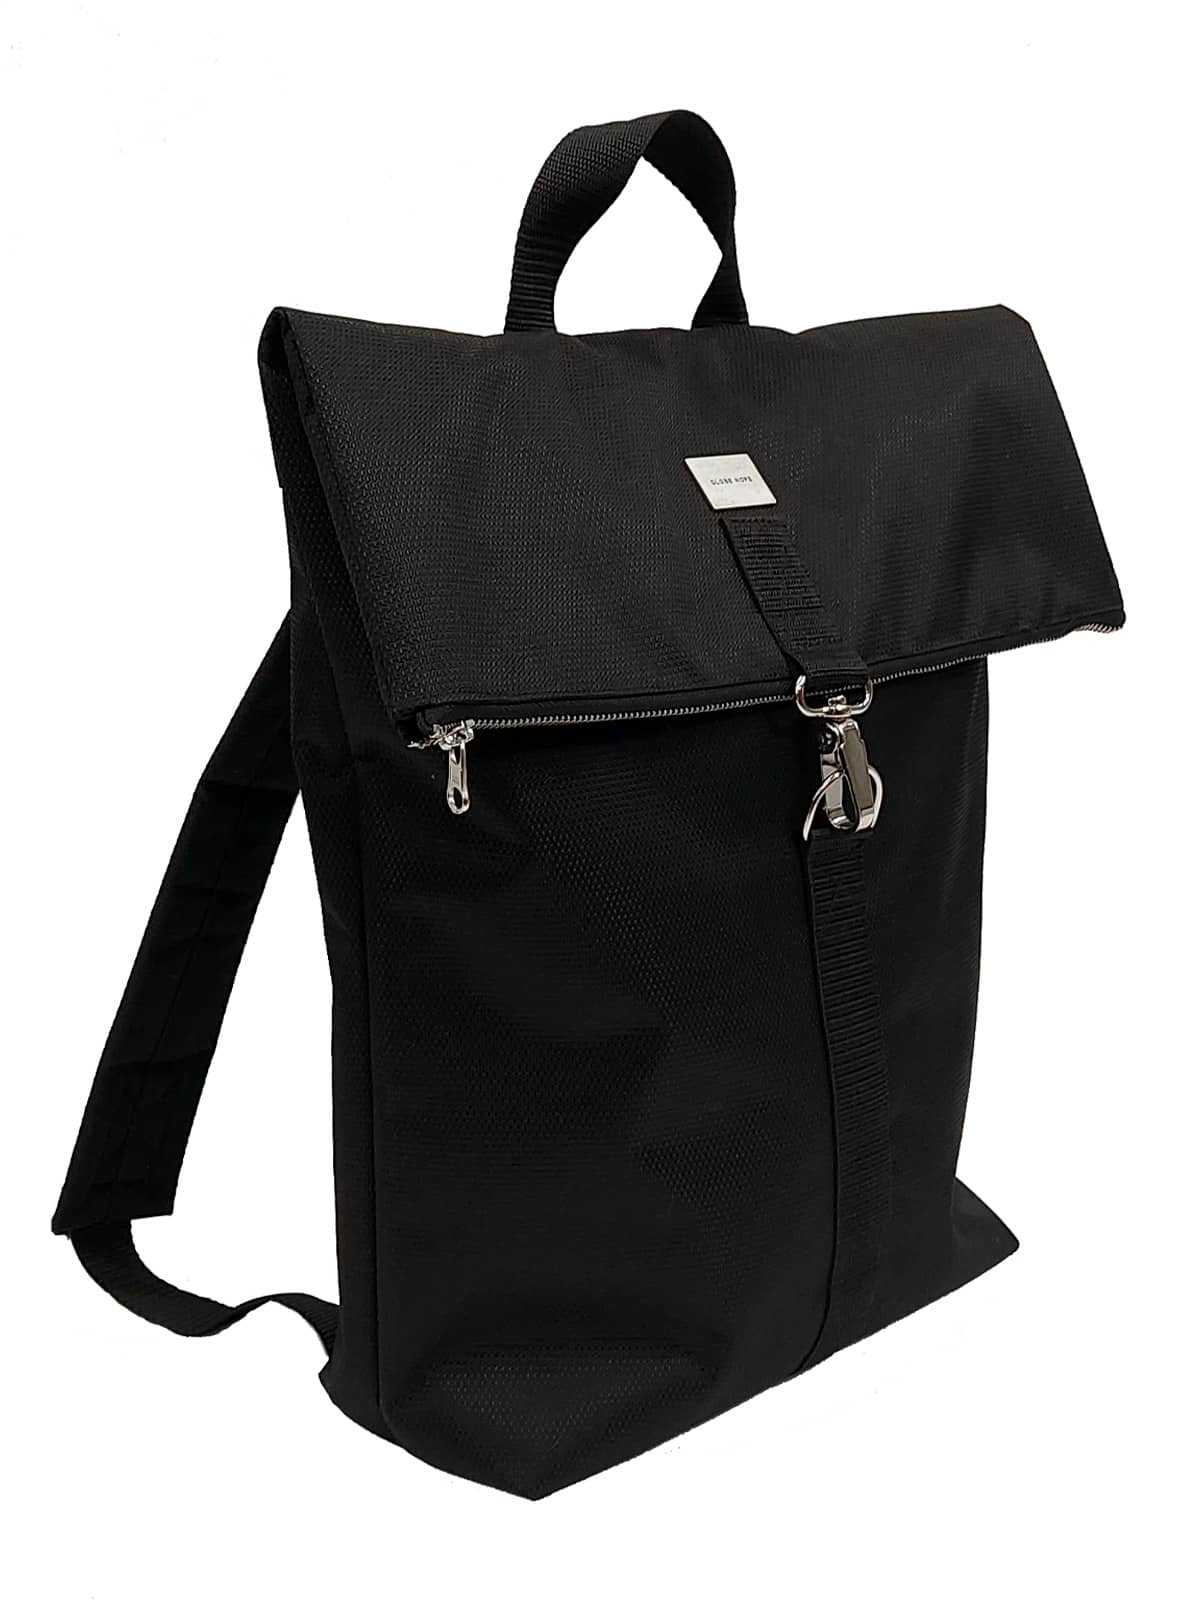 Kohmea Tech Backpack Black